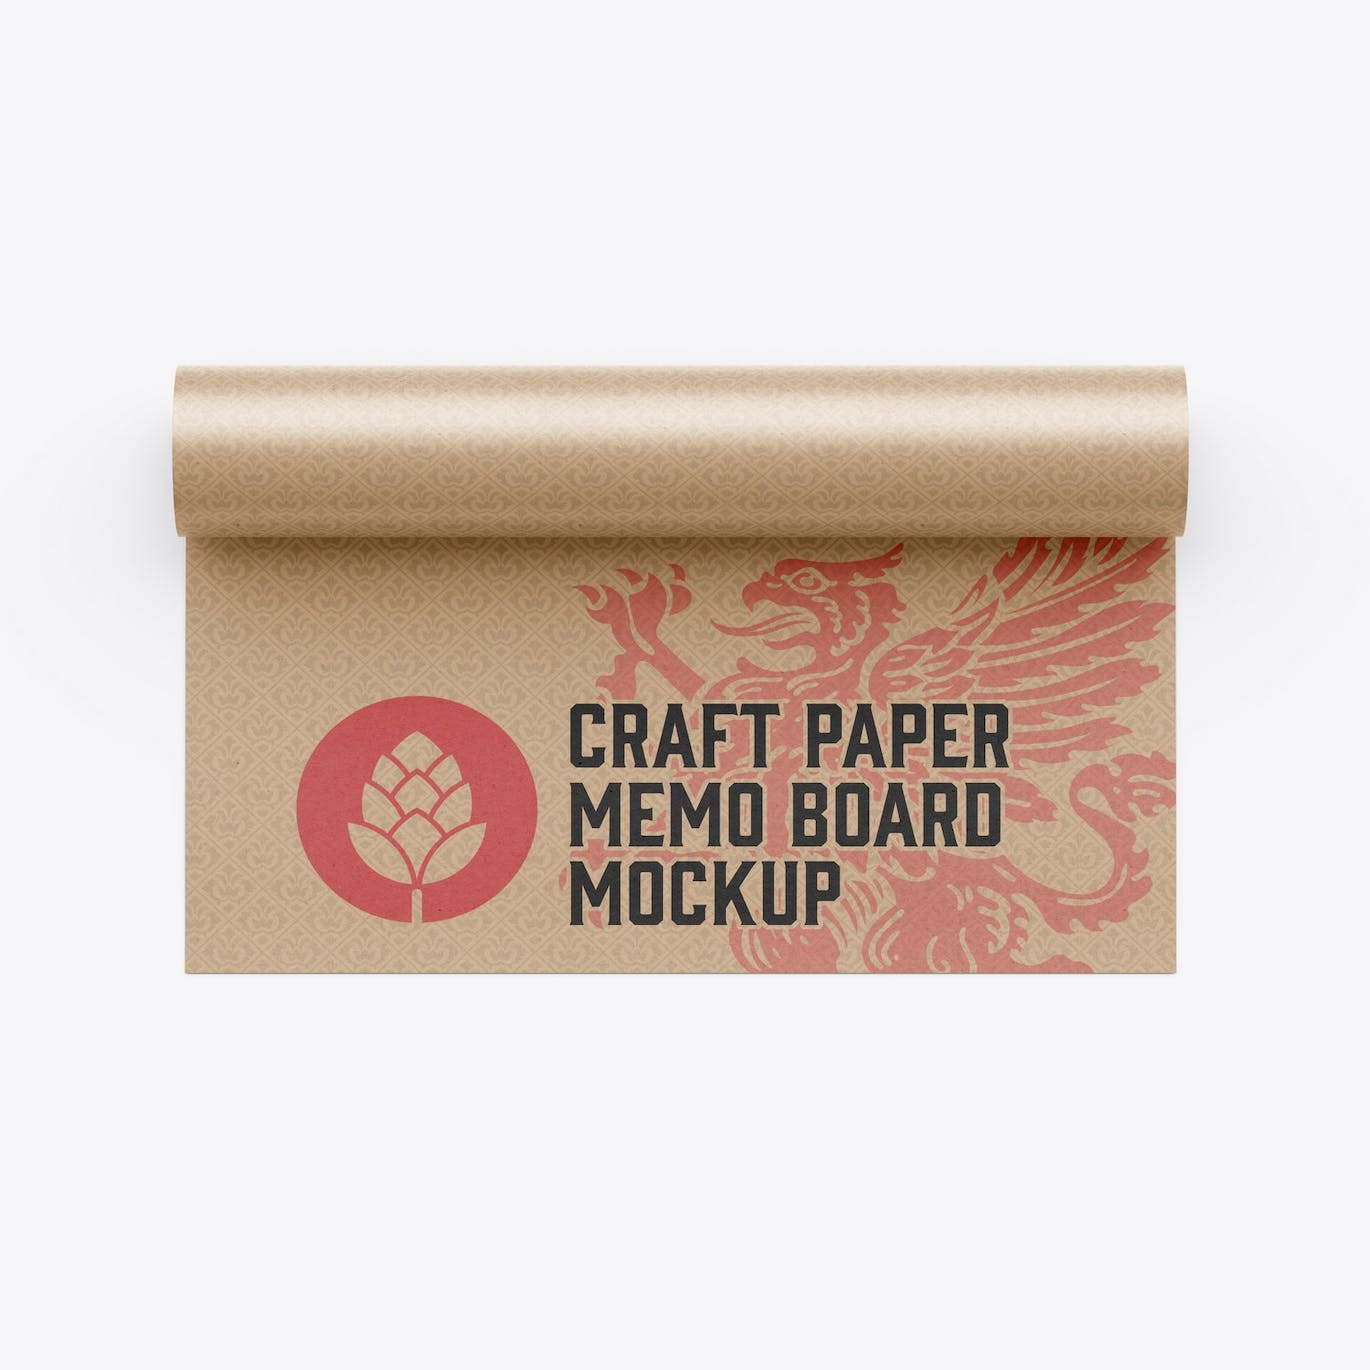 纸卷图案Logo设计样机 Paper Roll Mockup 样机素材 第3张